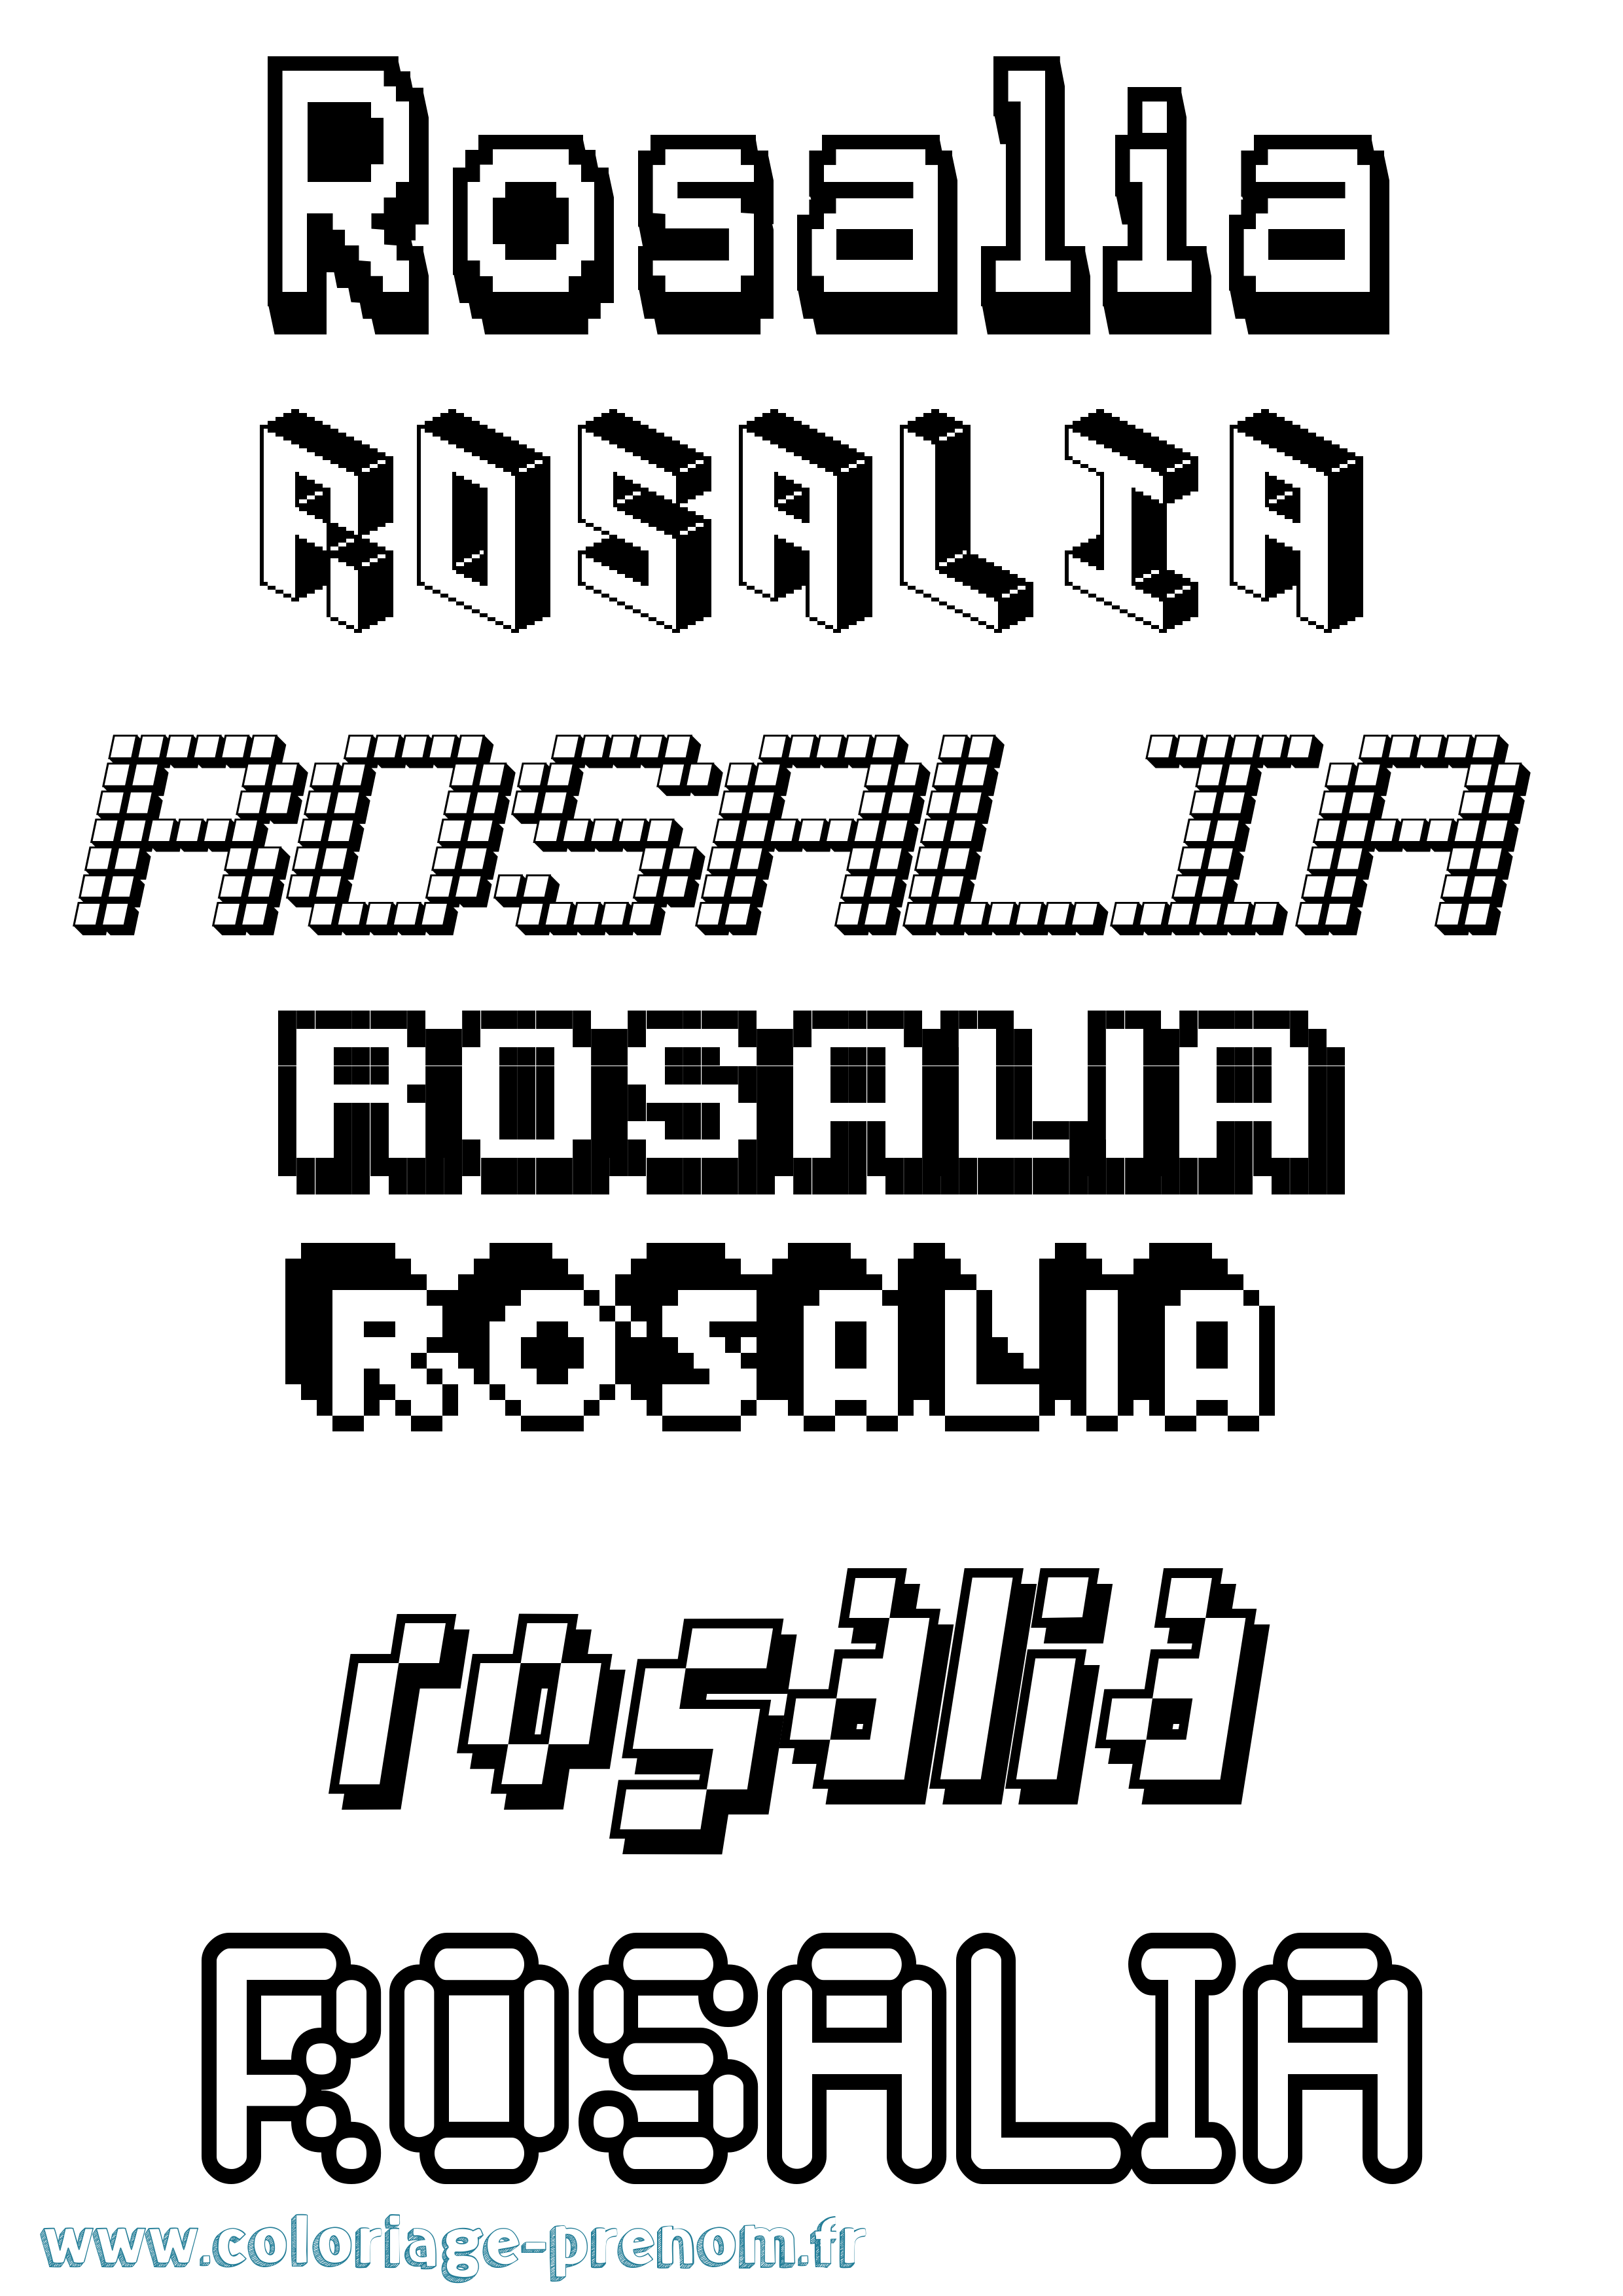 Coloriage prénom Rosalia Pixel